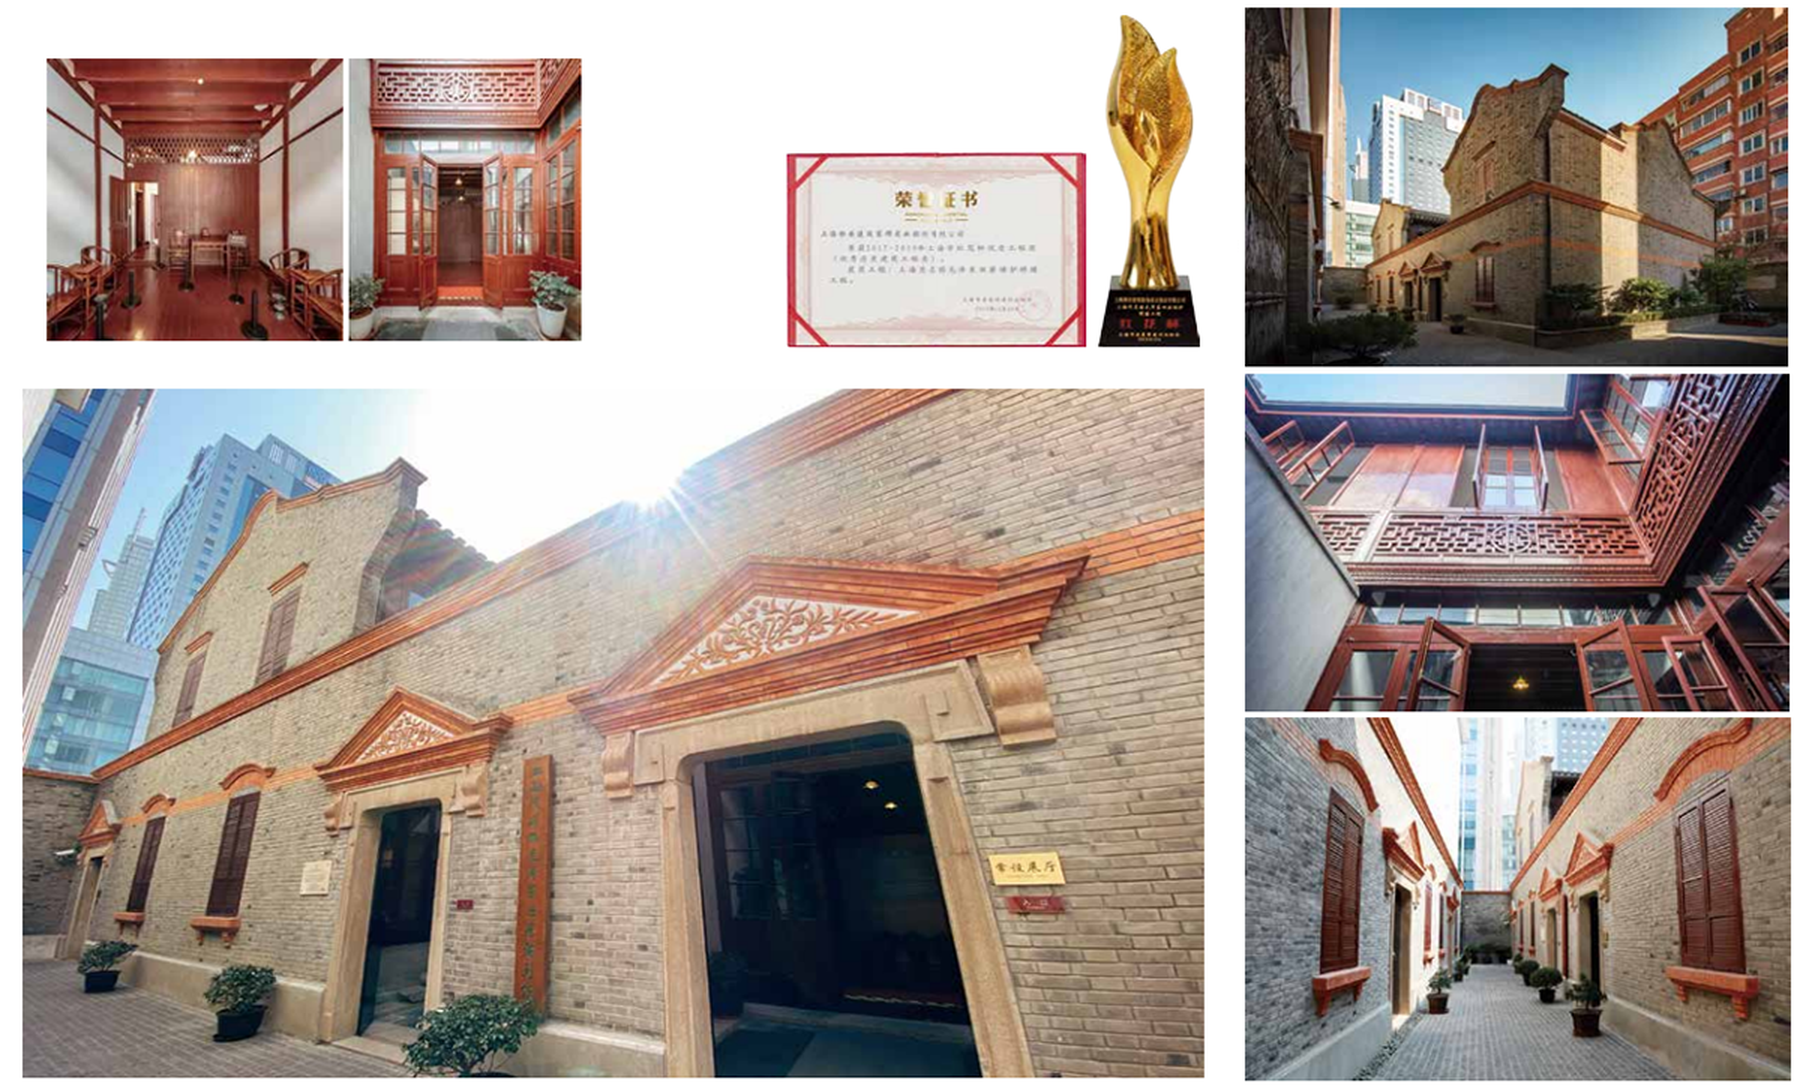 上海茂名路毛泽东旧居保护修缮工程